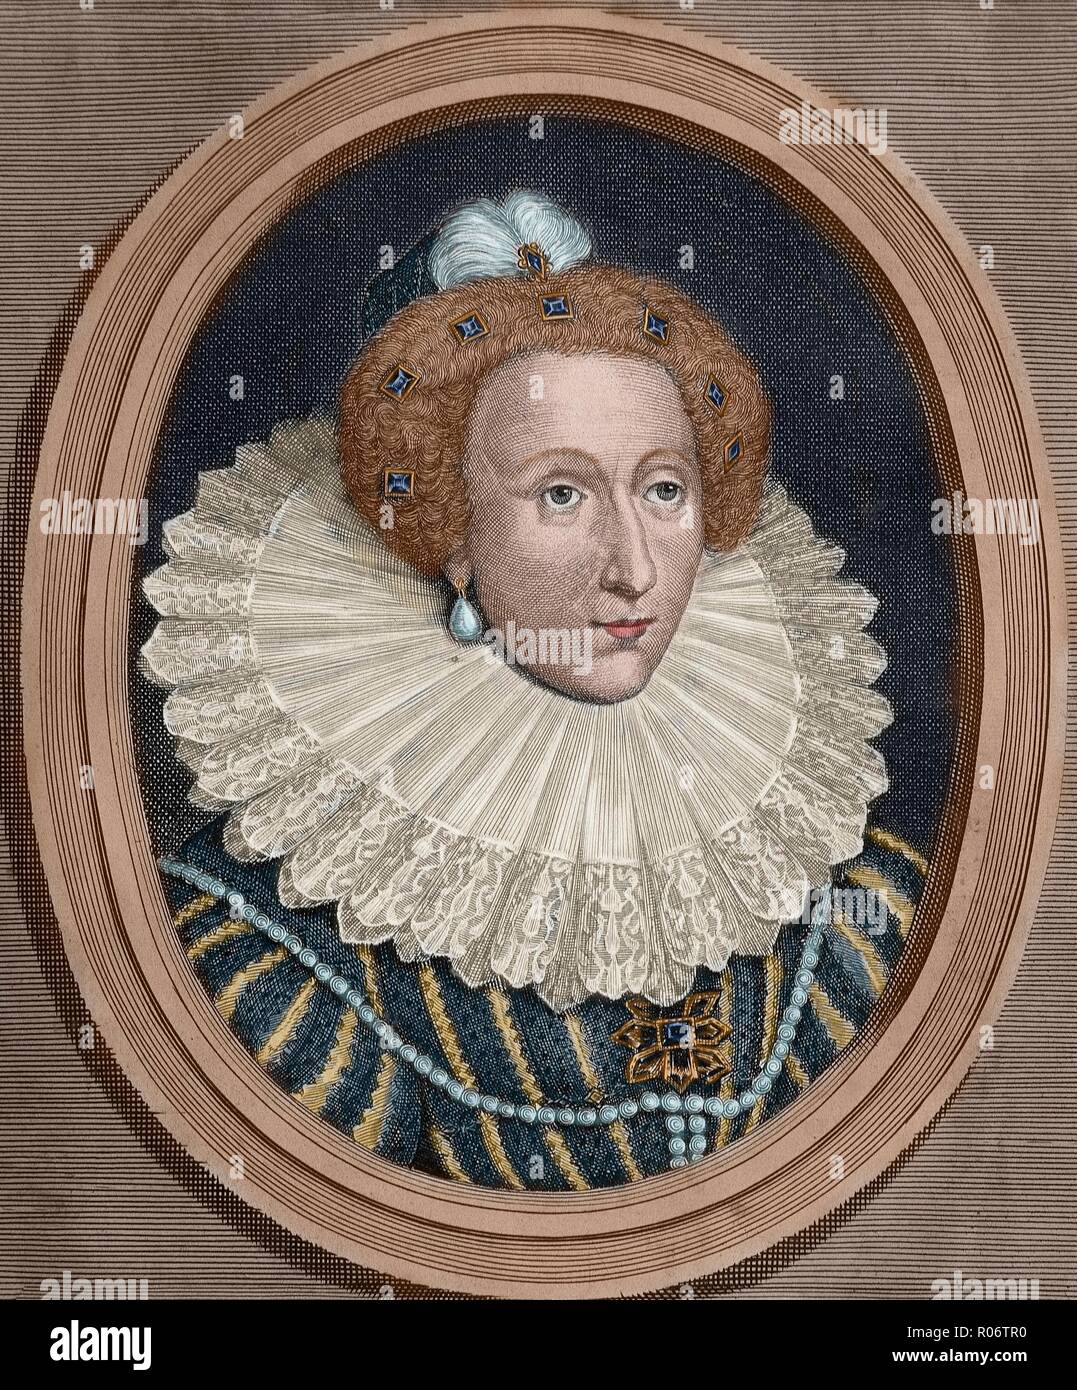 Isabel I (Greenwich, 1533-Richmond, 1603). Reina de Inglaterra e Irlanda (1558-1603). Restableció el anglicanismo e hizo decapitar a María Estuardo. Se relacionó con los Estados protestantes y luchó contra España. Fue la última reina de la dinastía Tudor. Grabado coloreado. Stock Photo